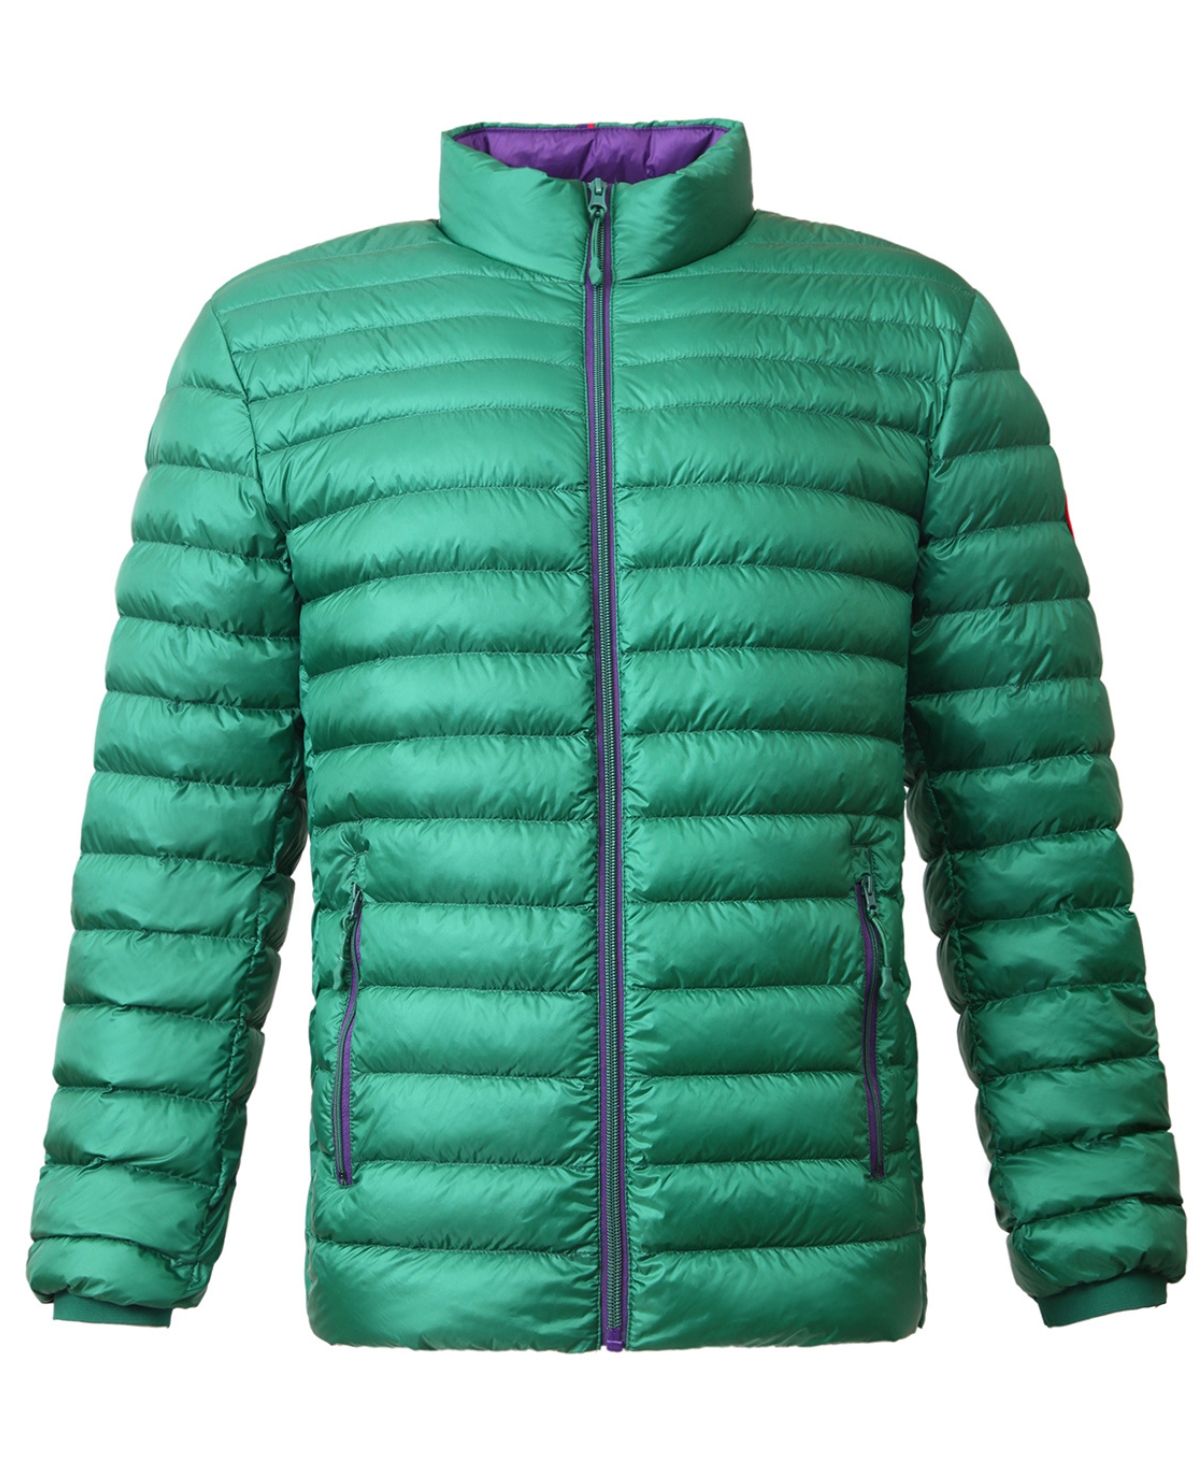 Men's Ultra-Light Packable Down Jacket - Verdant green